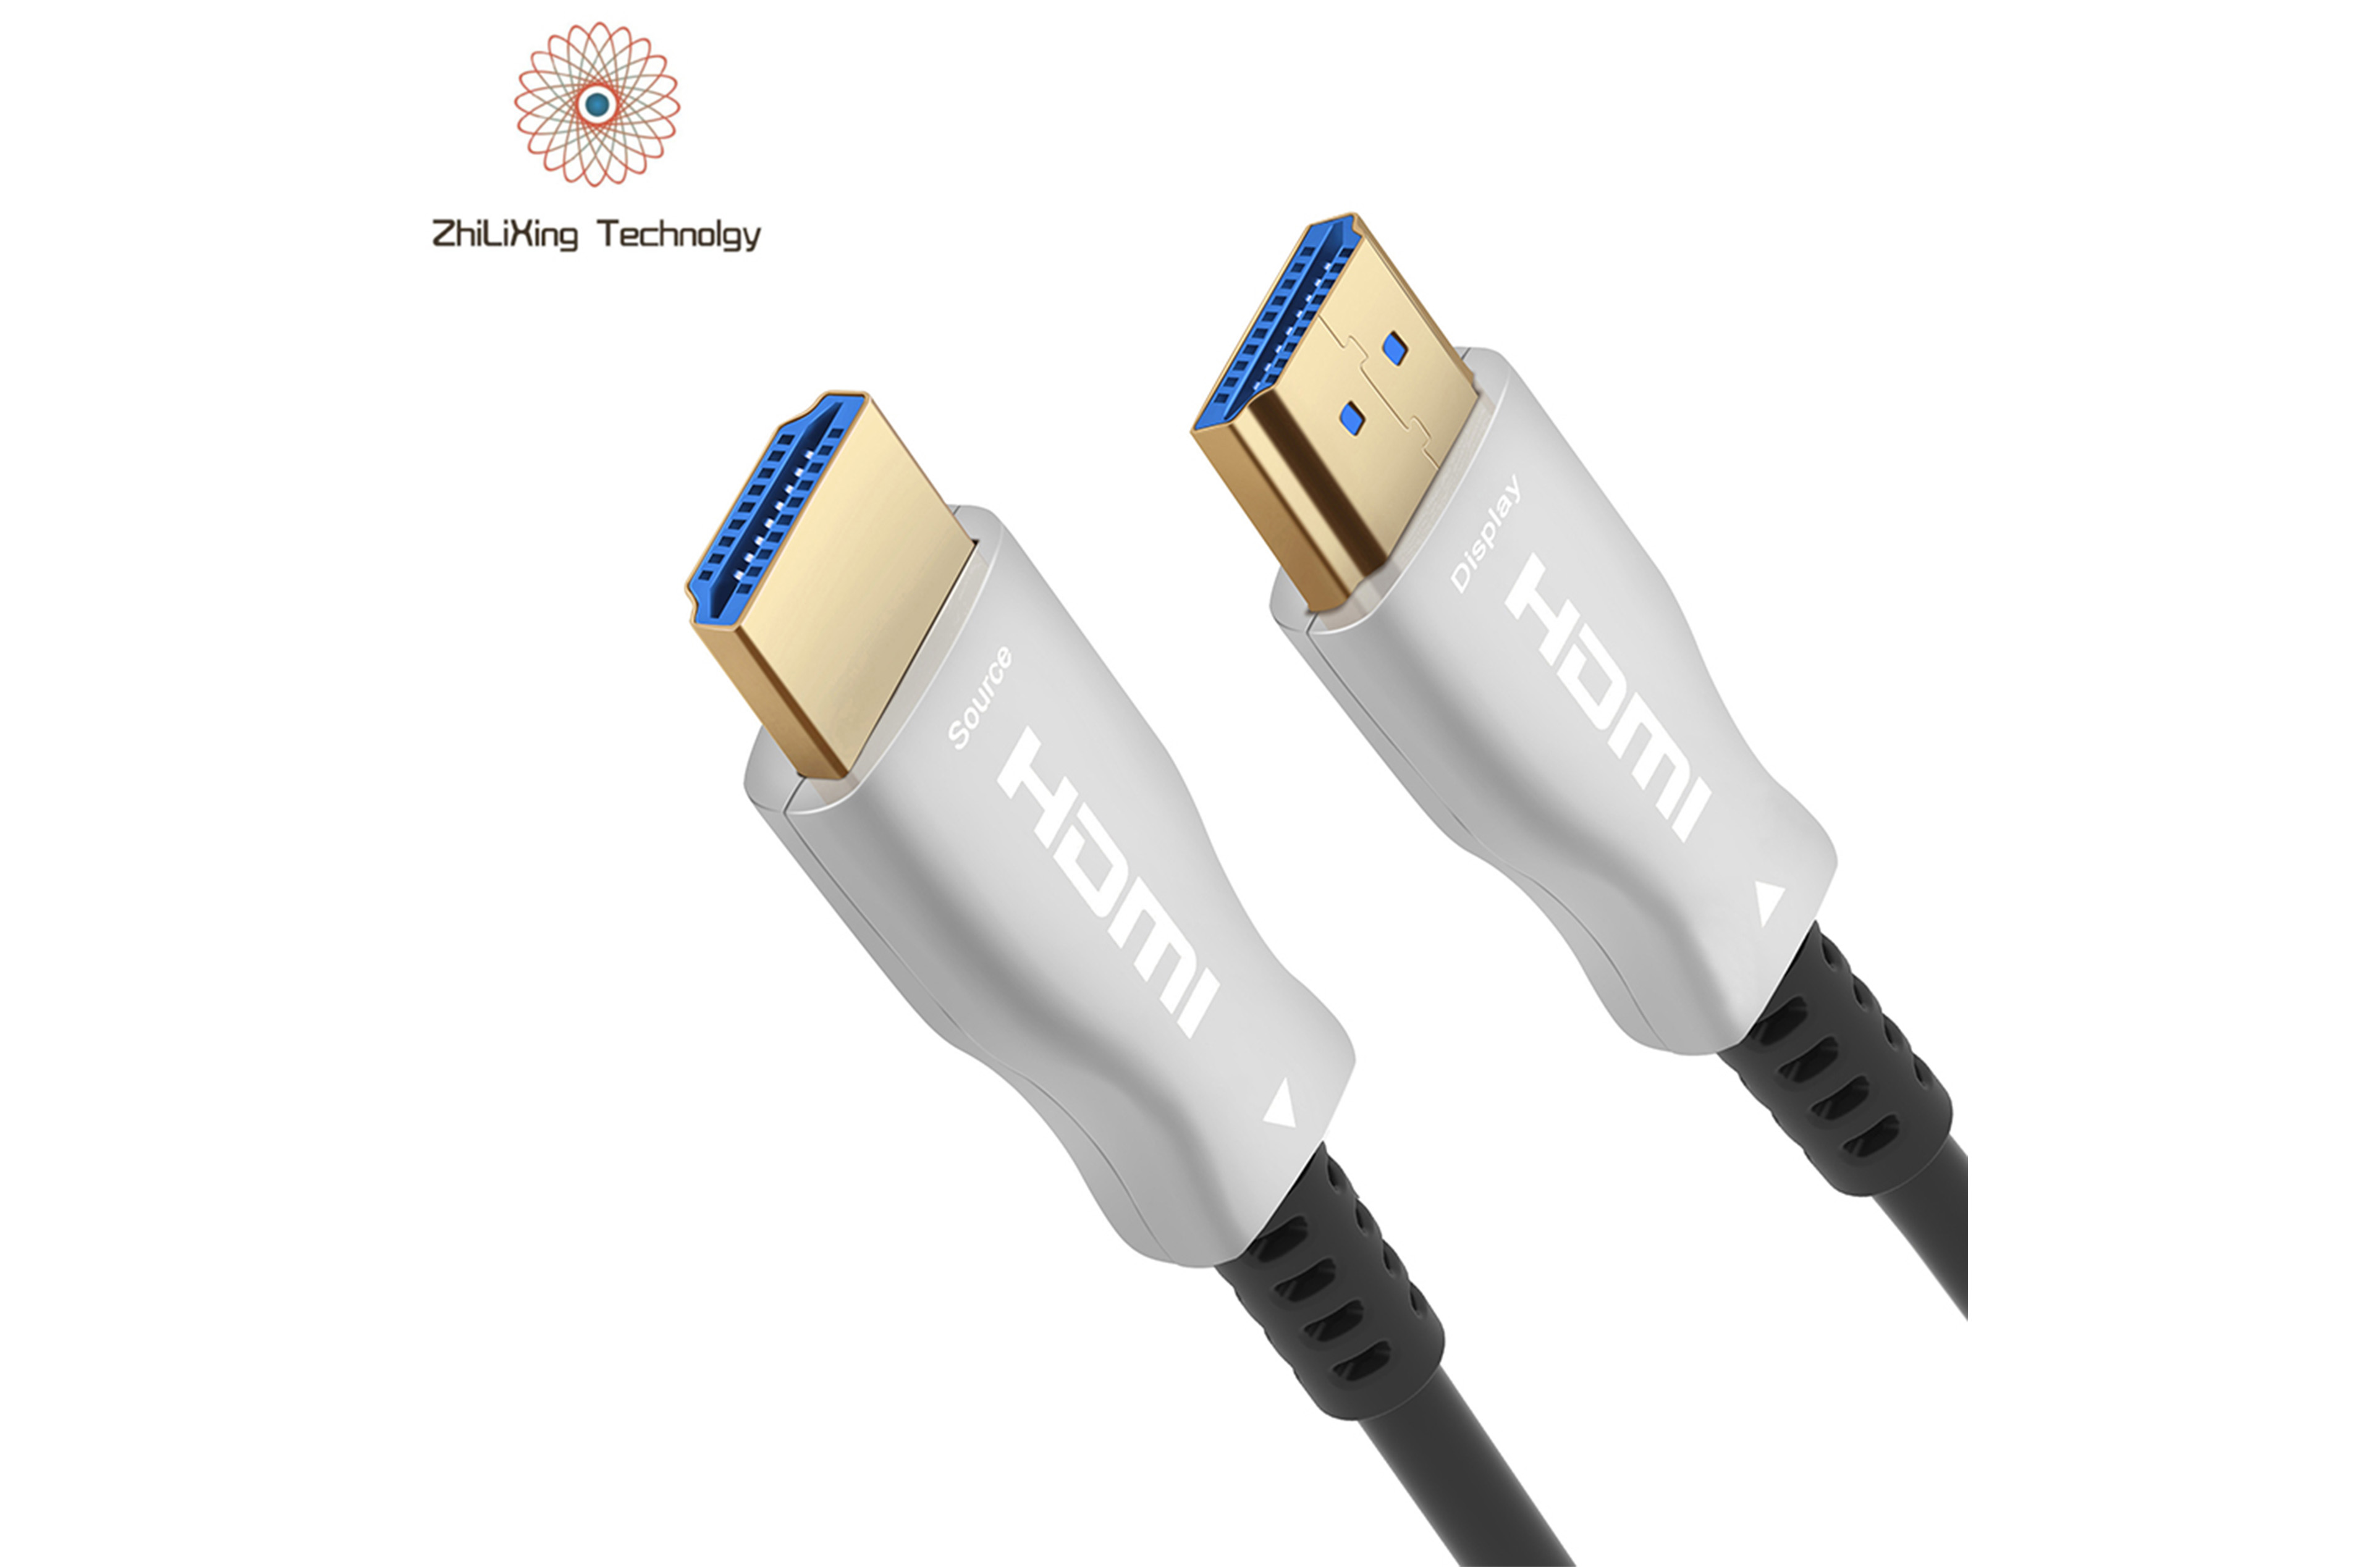 HDMI fiber optic cable-21018